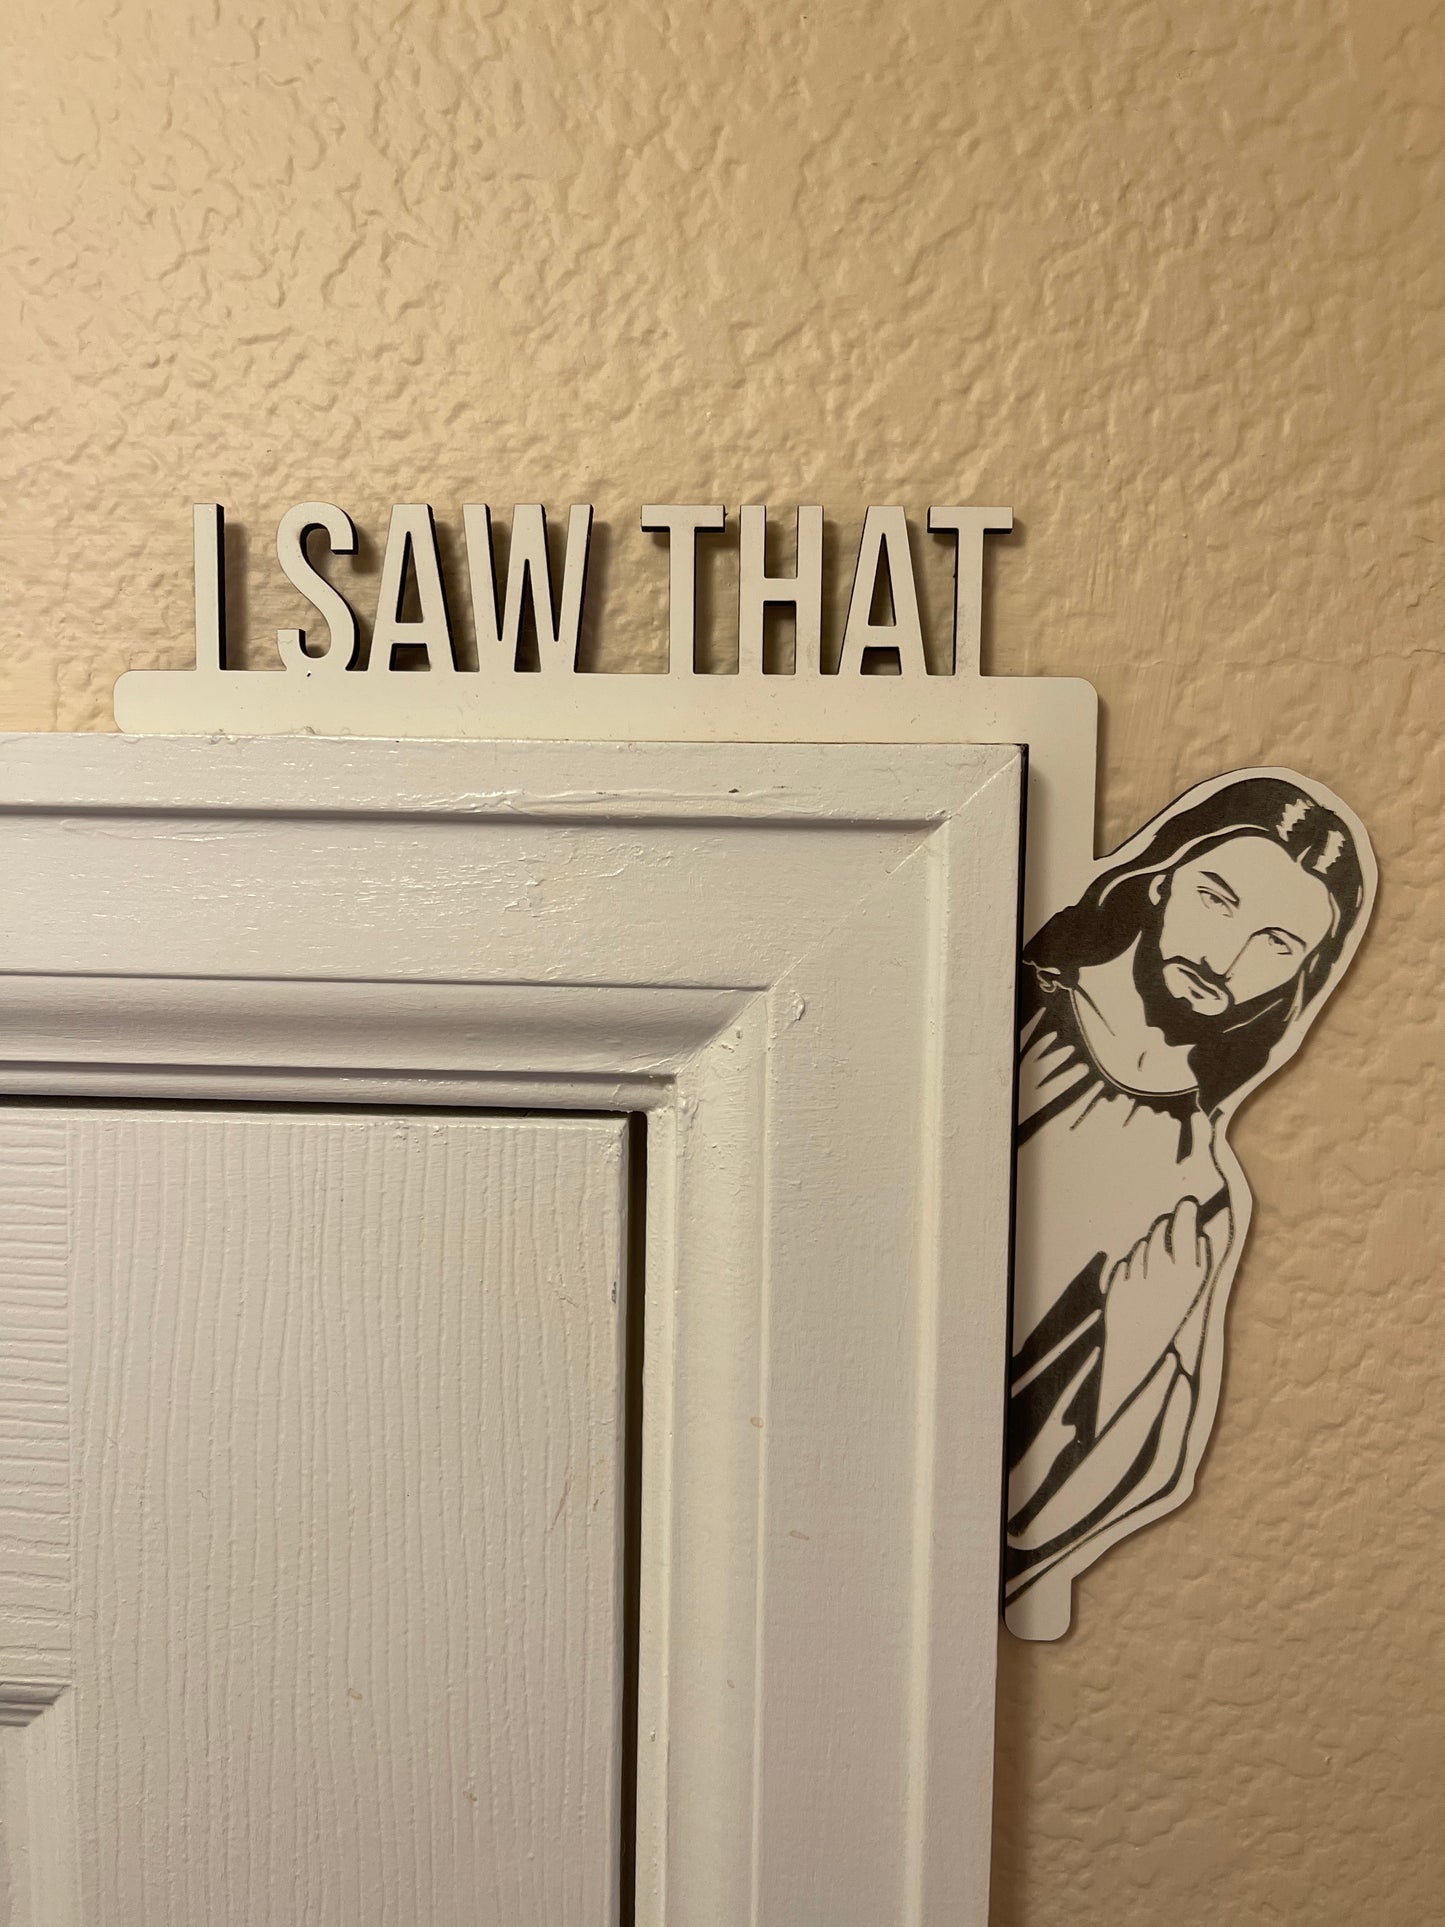 I saw That - Jesus